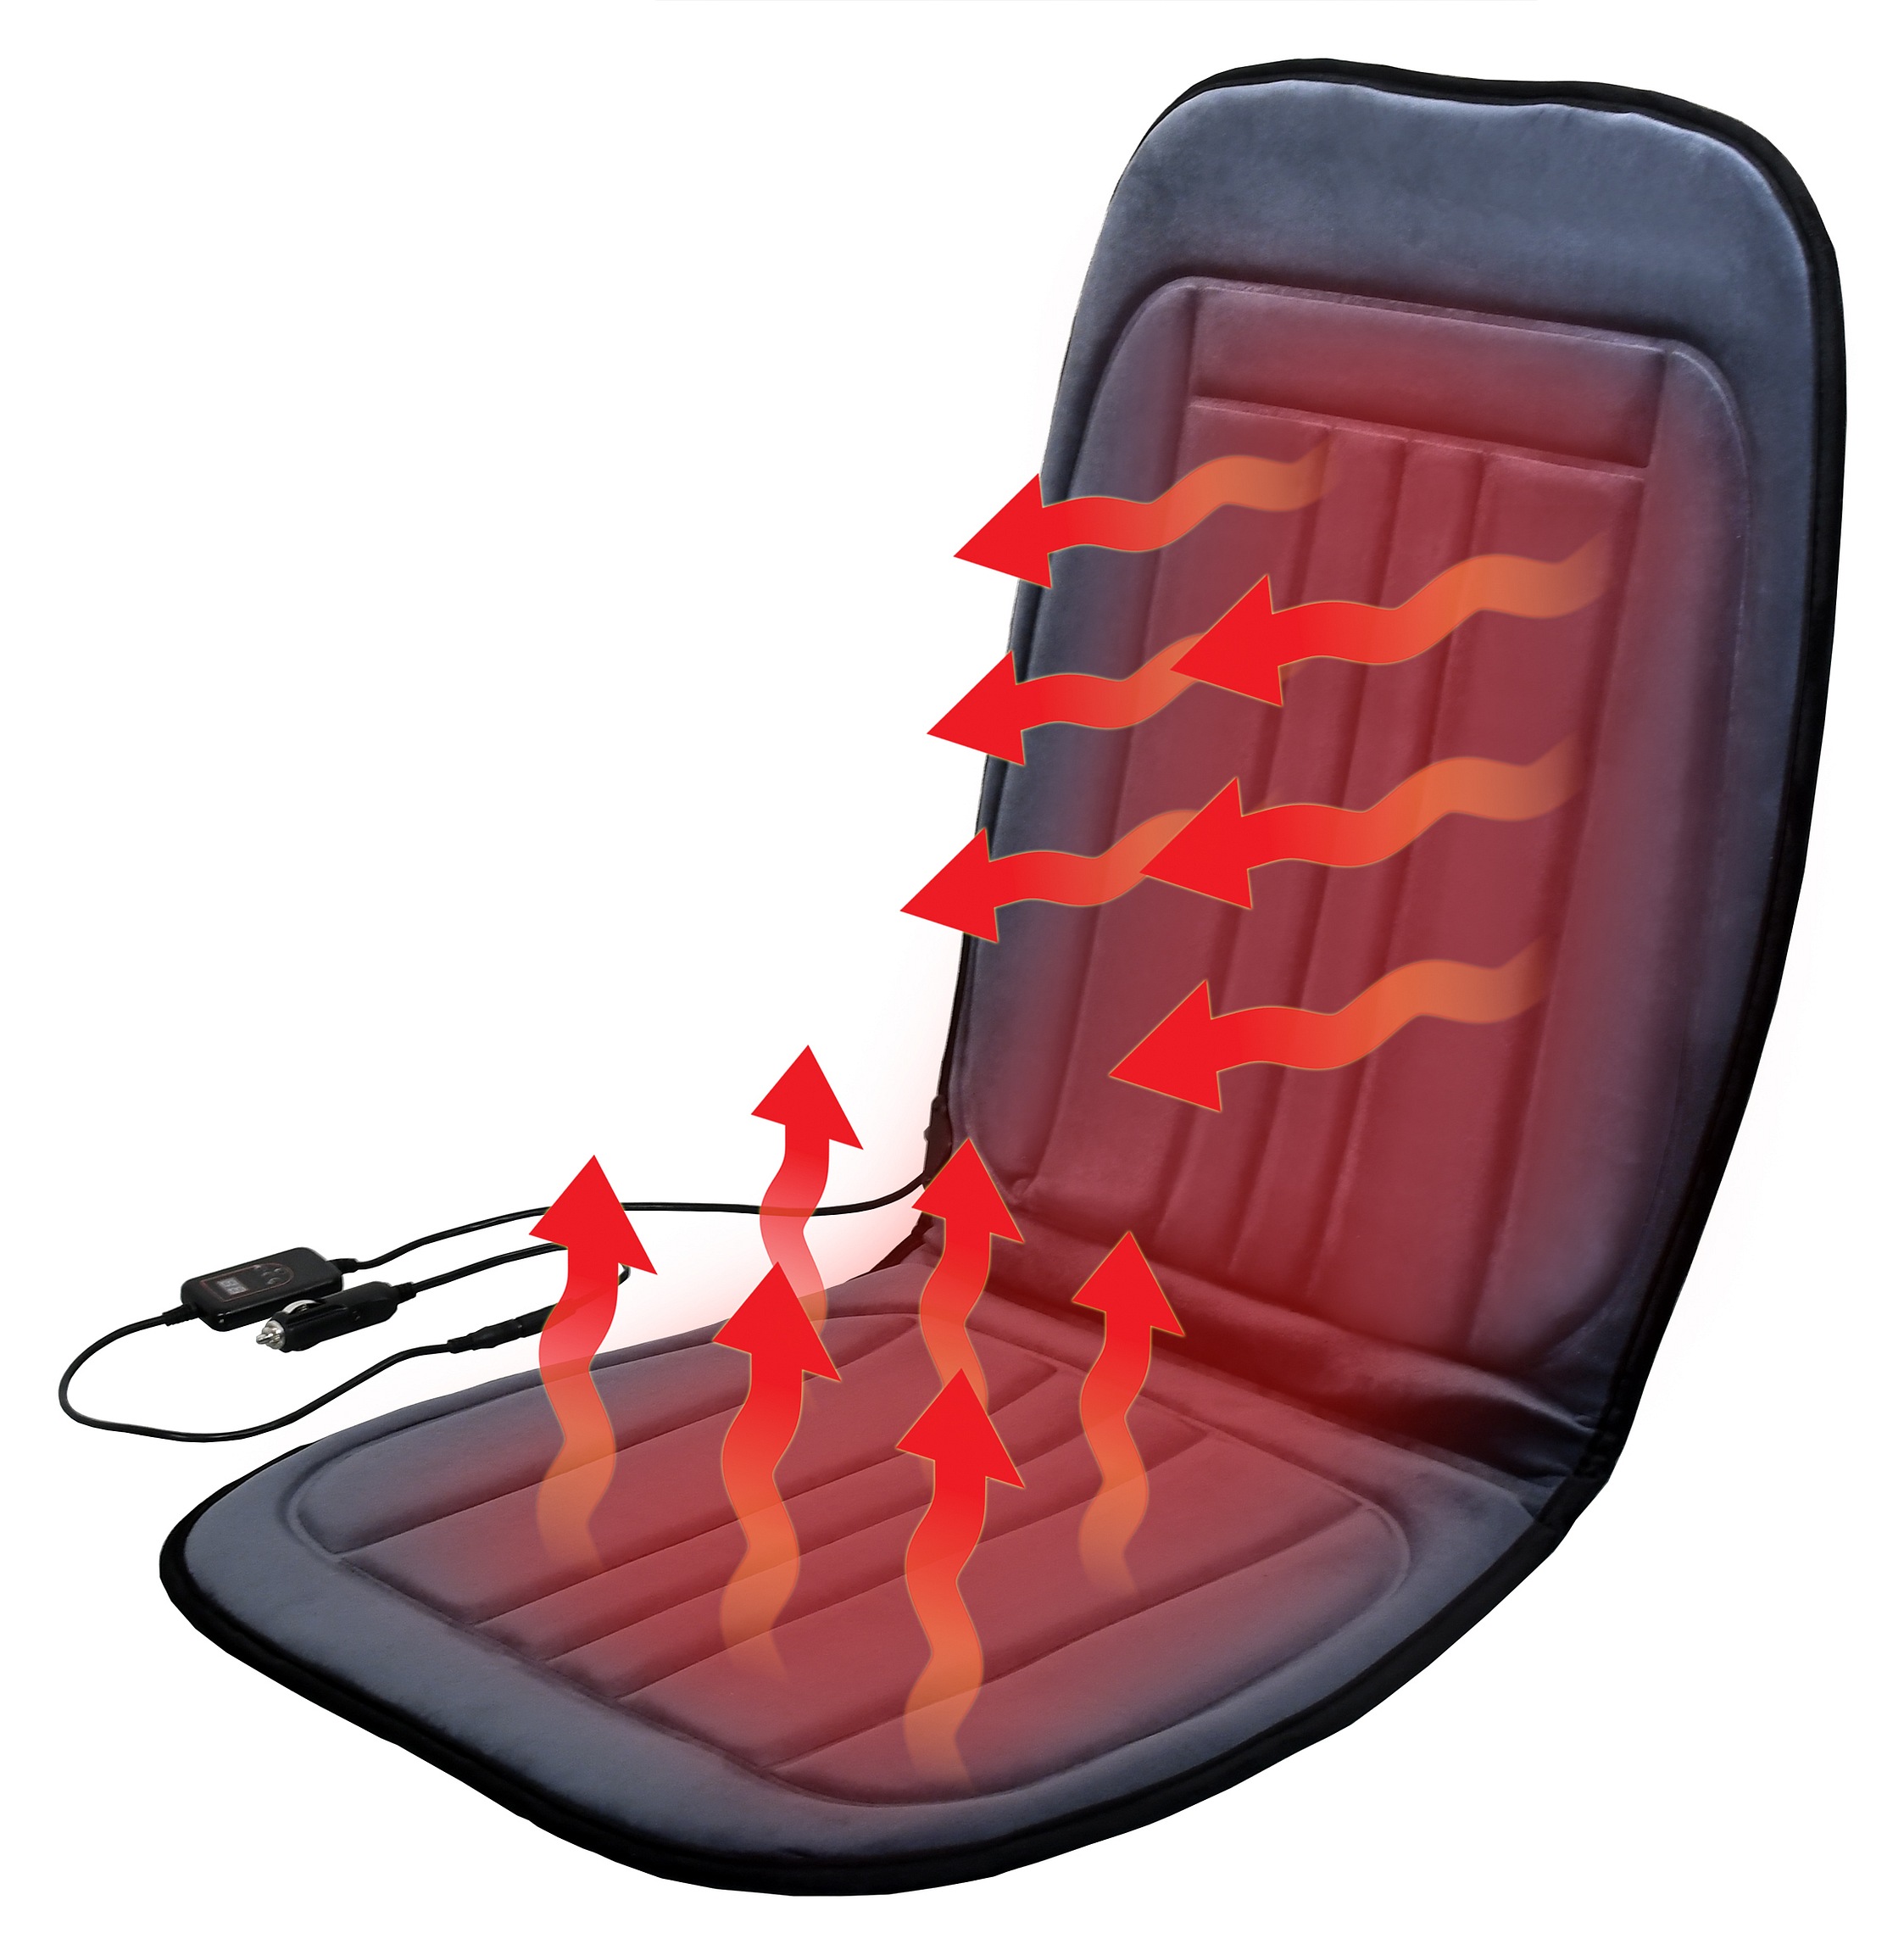 Potah sedadla vyhřívaný s termostatem 12V GRADE Compass 04122 + Dárek, servis bez starostí v hodnotě 300Kč